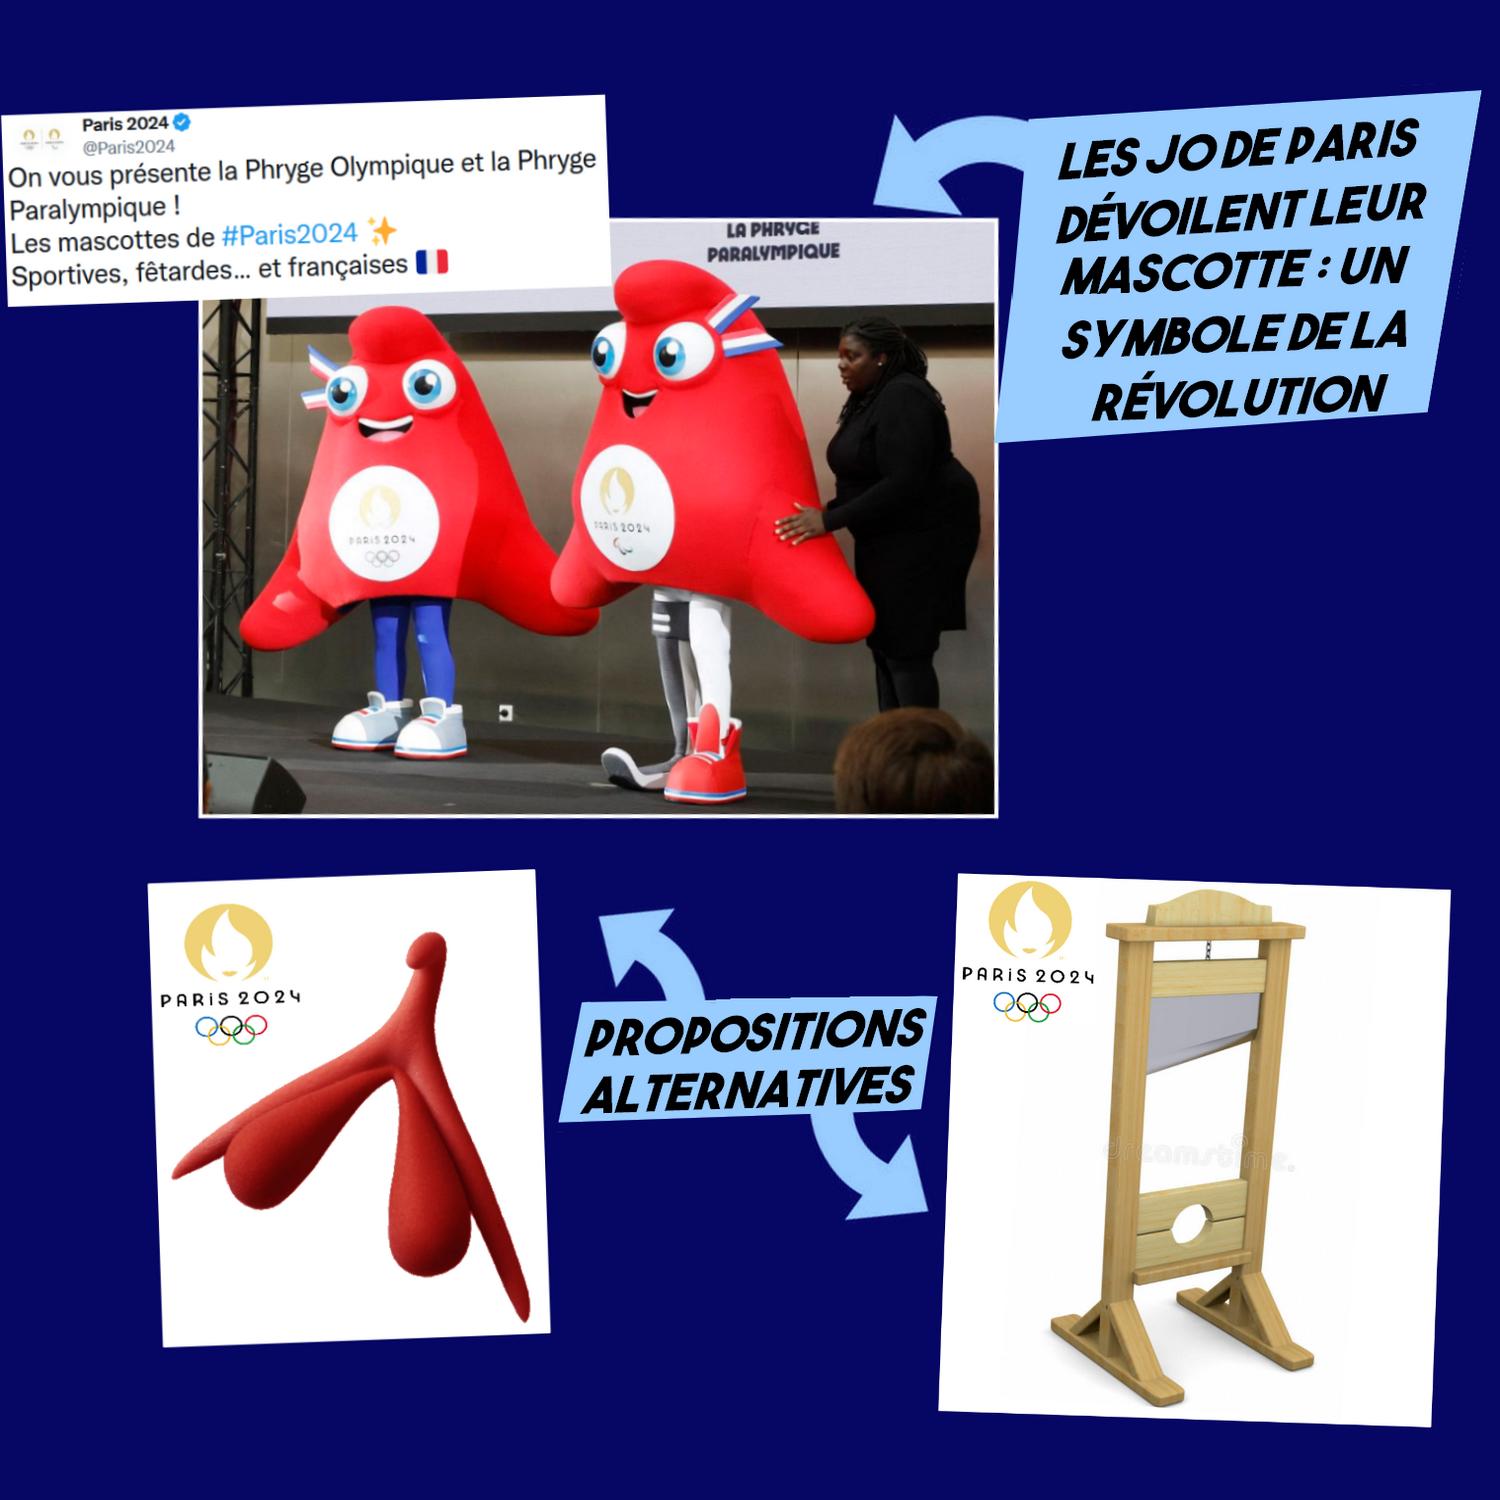 La mascotte des JO de Paris 2024 ? Un symbole révolutionnaire - Contre  Attaque